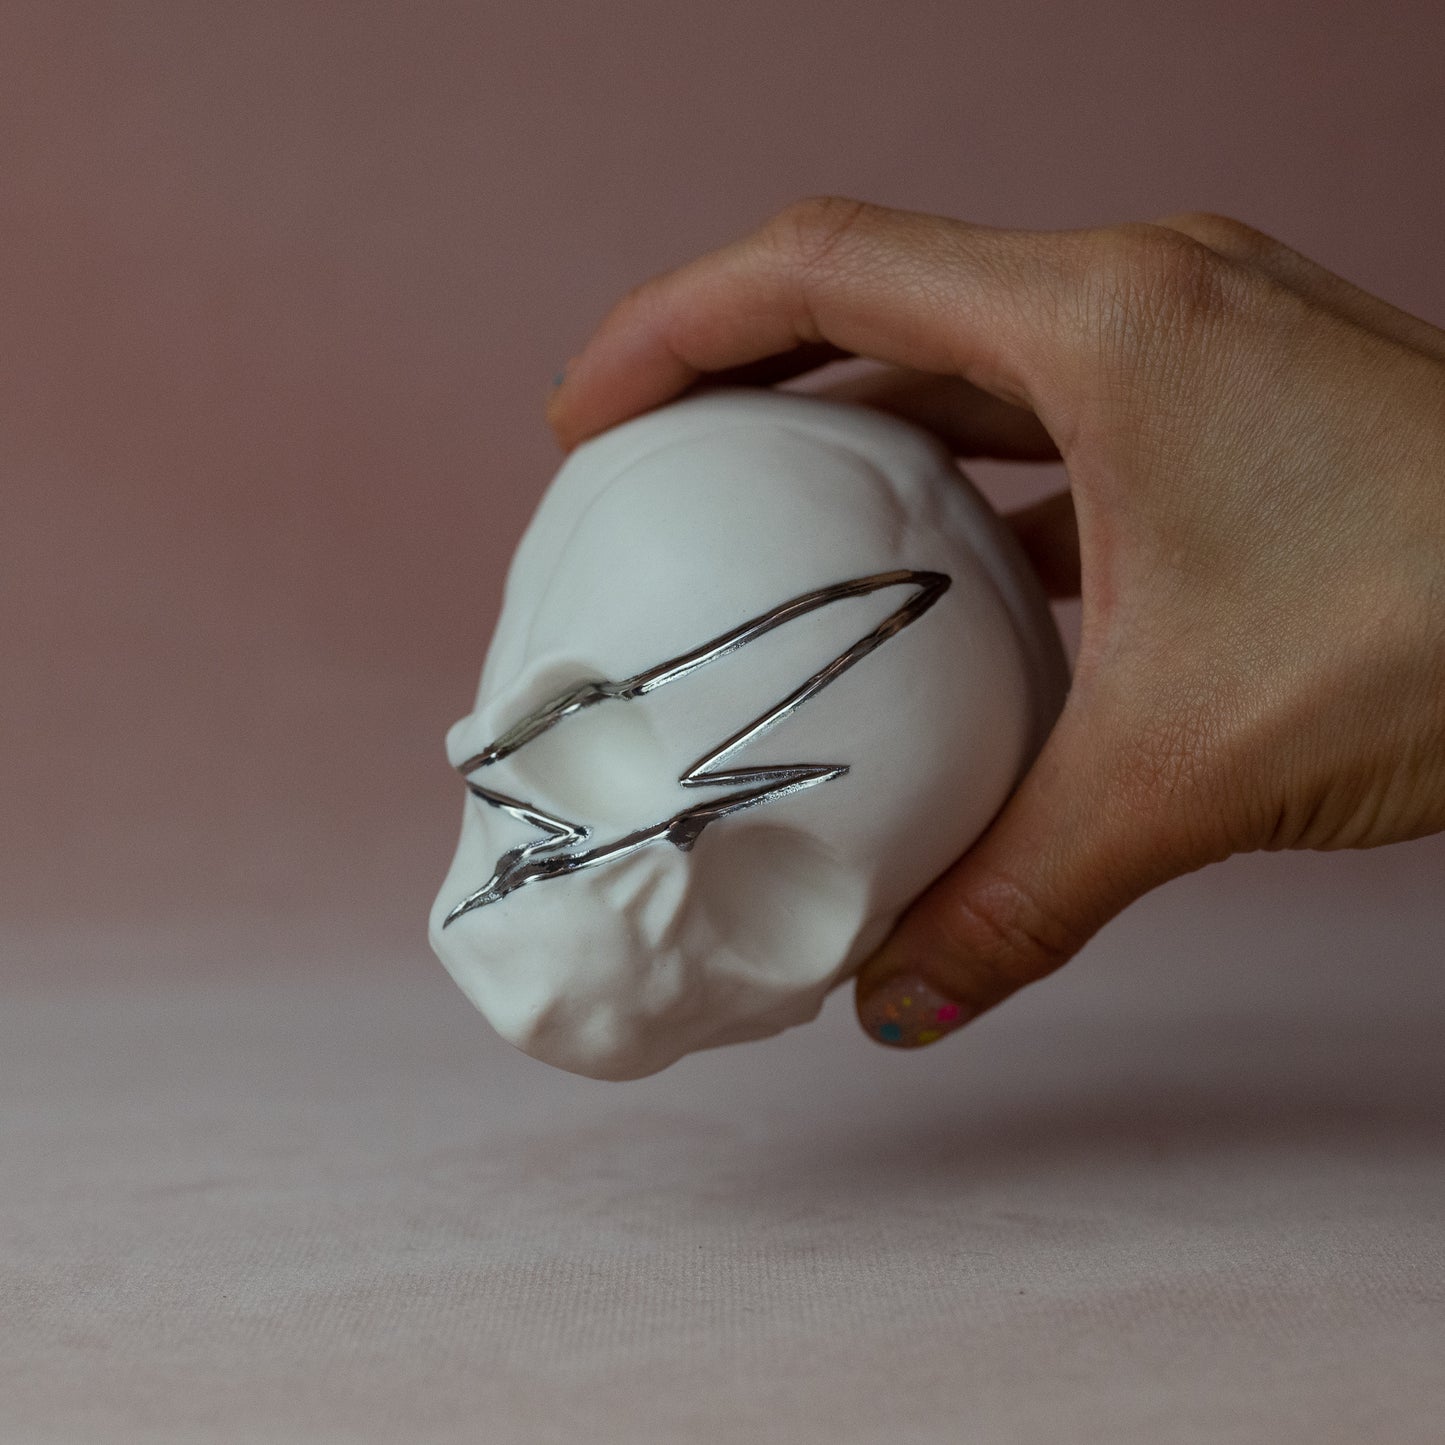 Gilded Porcelain Skull with Lighting Bolt